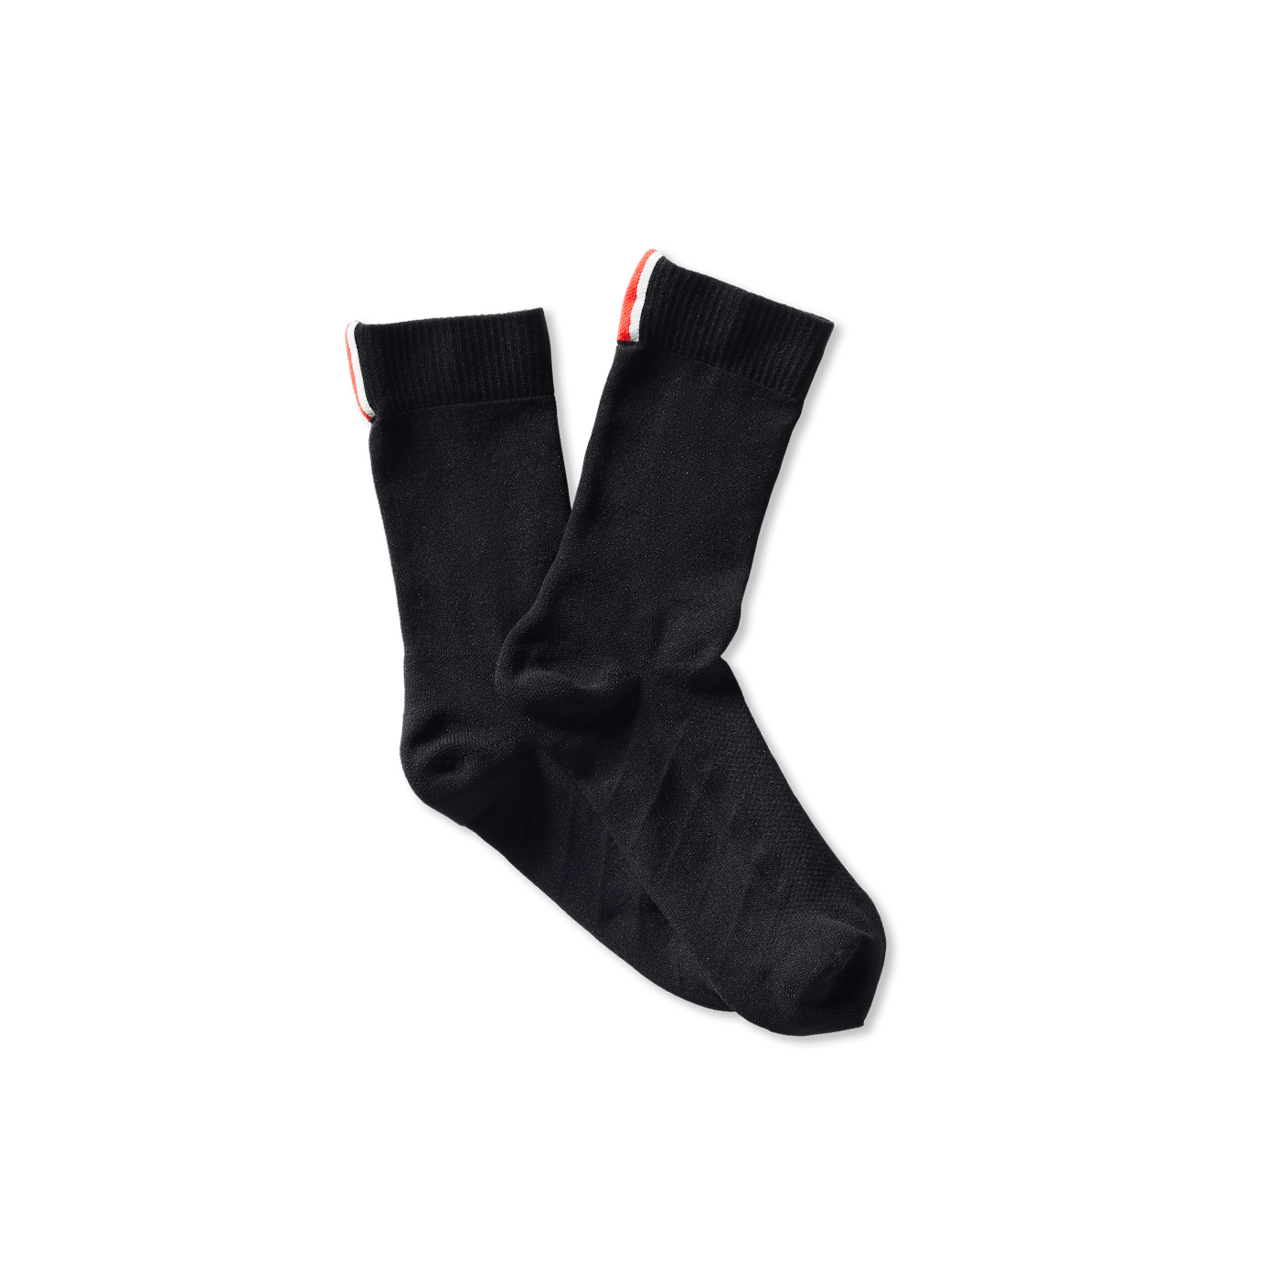 Socks unisex black